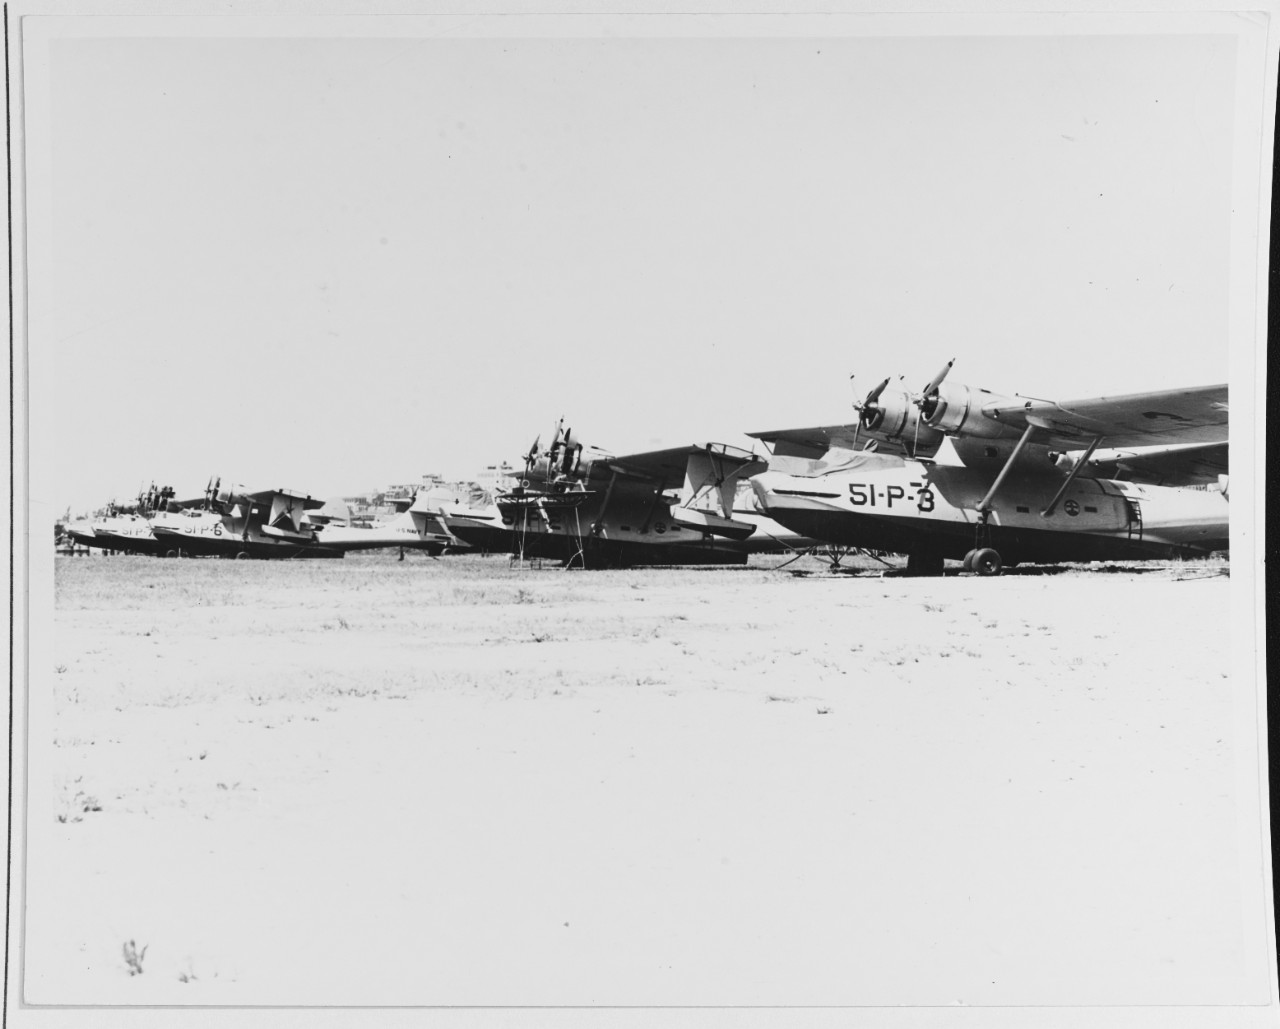 PBY-2's